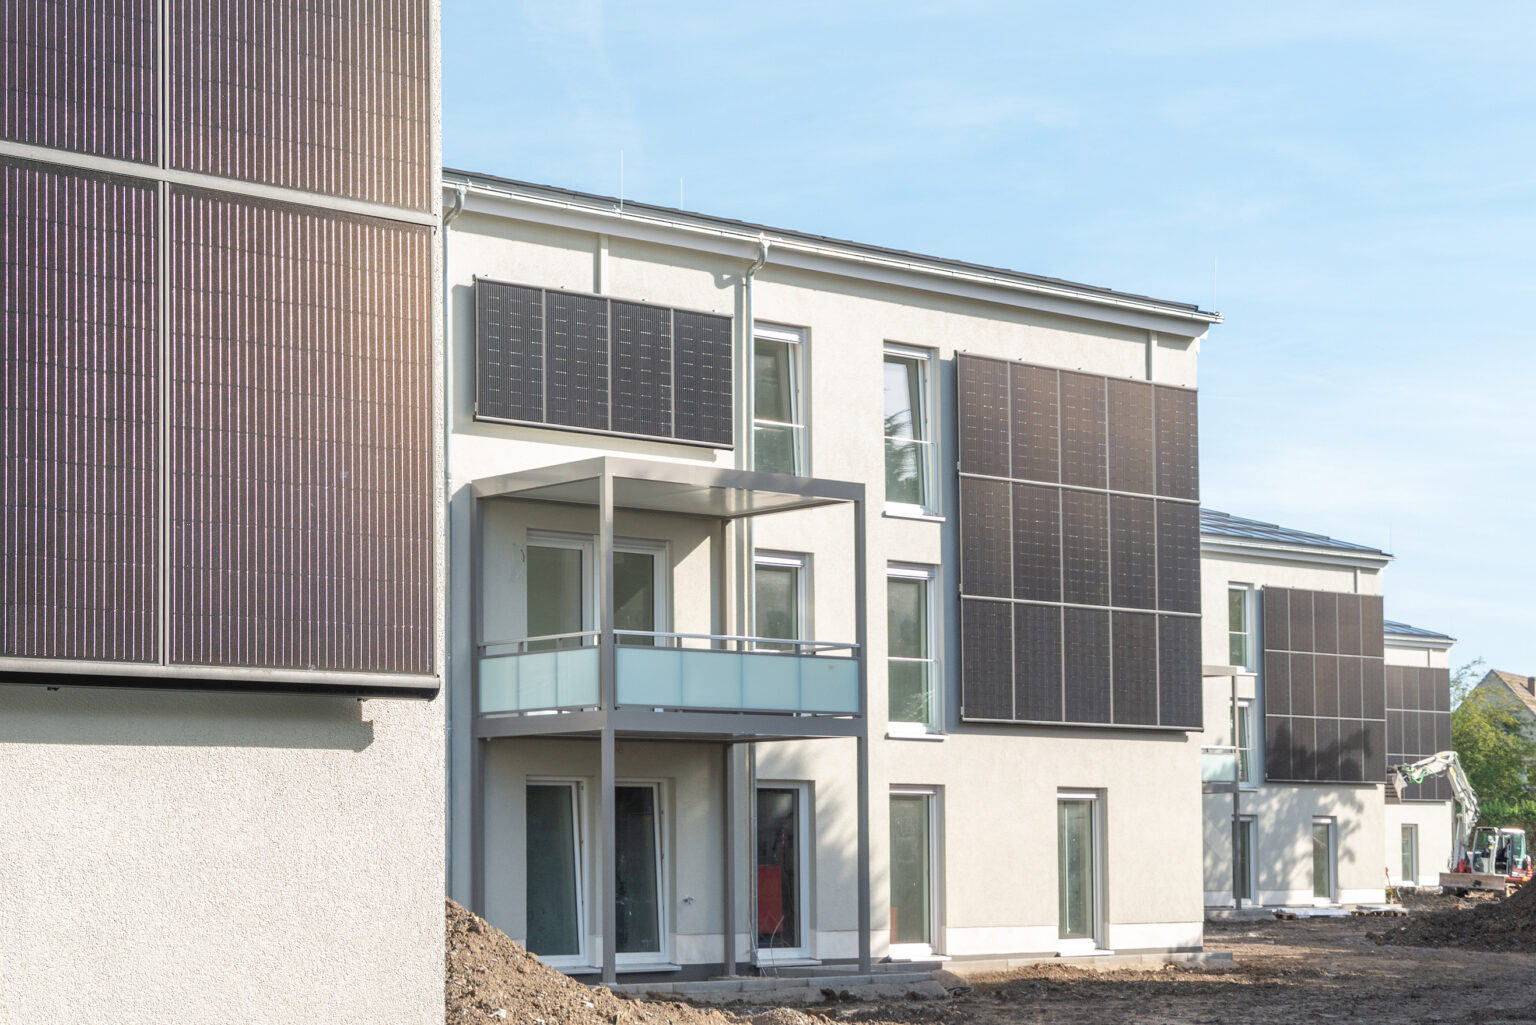 Energieautarkes und enttechnisiertes Neubauquartier in Unna-Königsborn